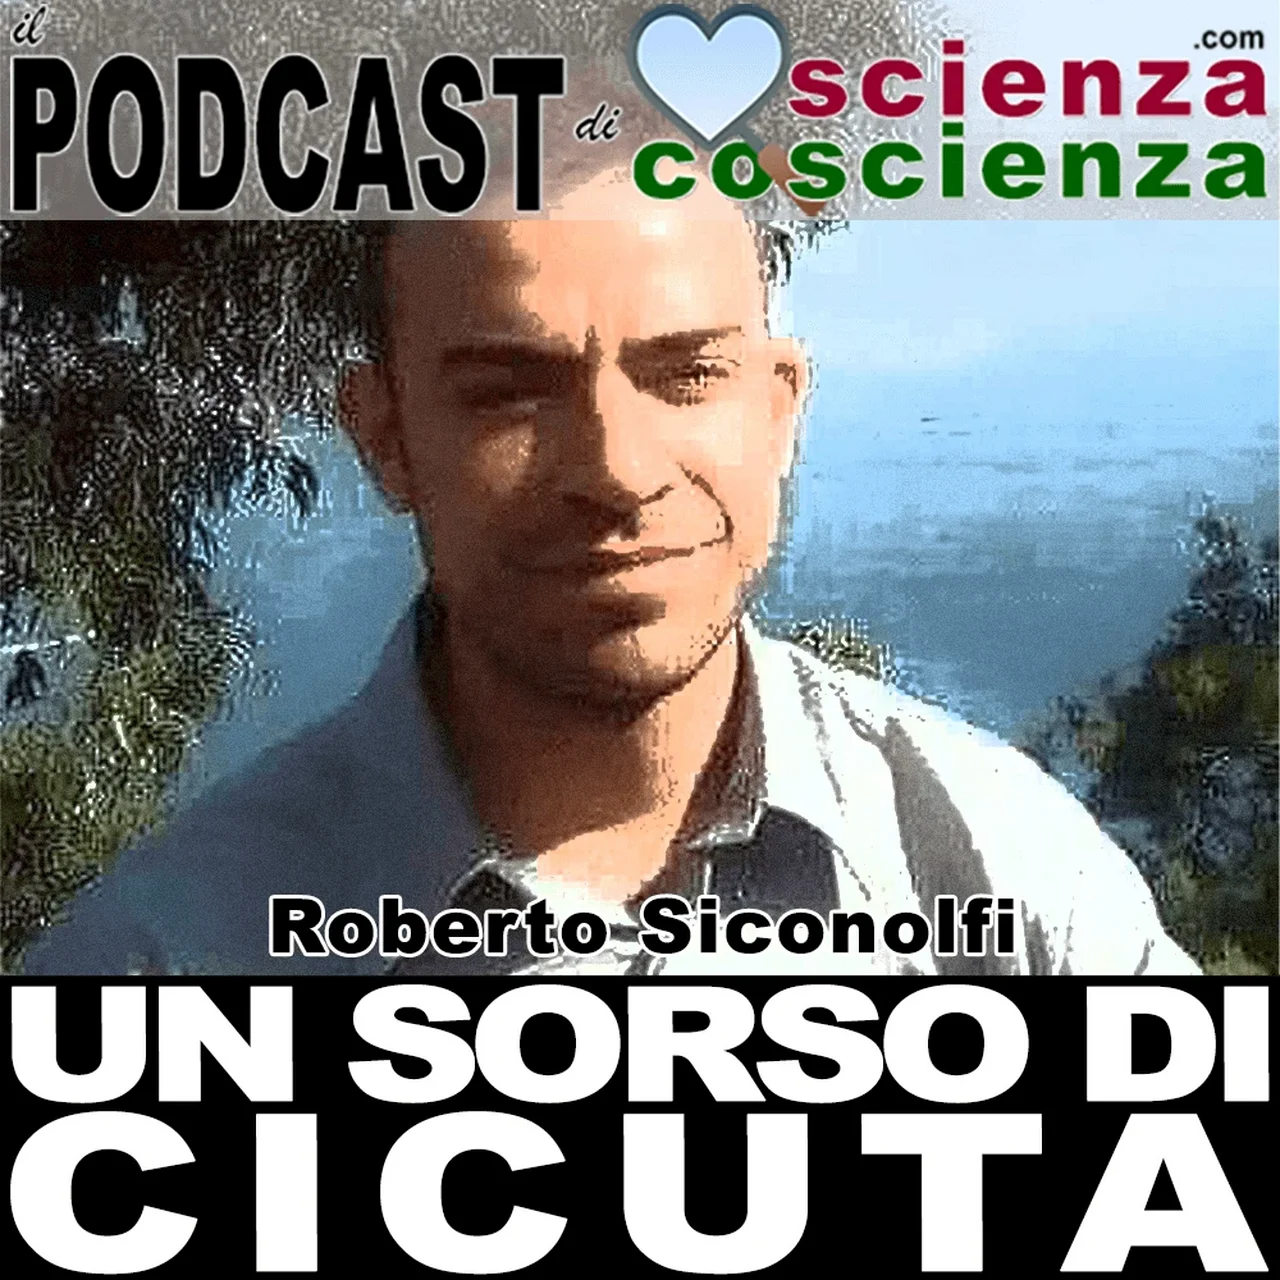 Roberto Siconolfi, abbandonare il potere: una nuova strada!